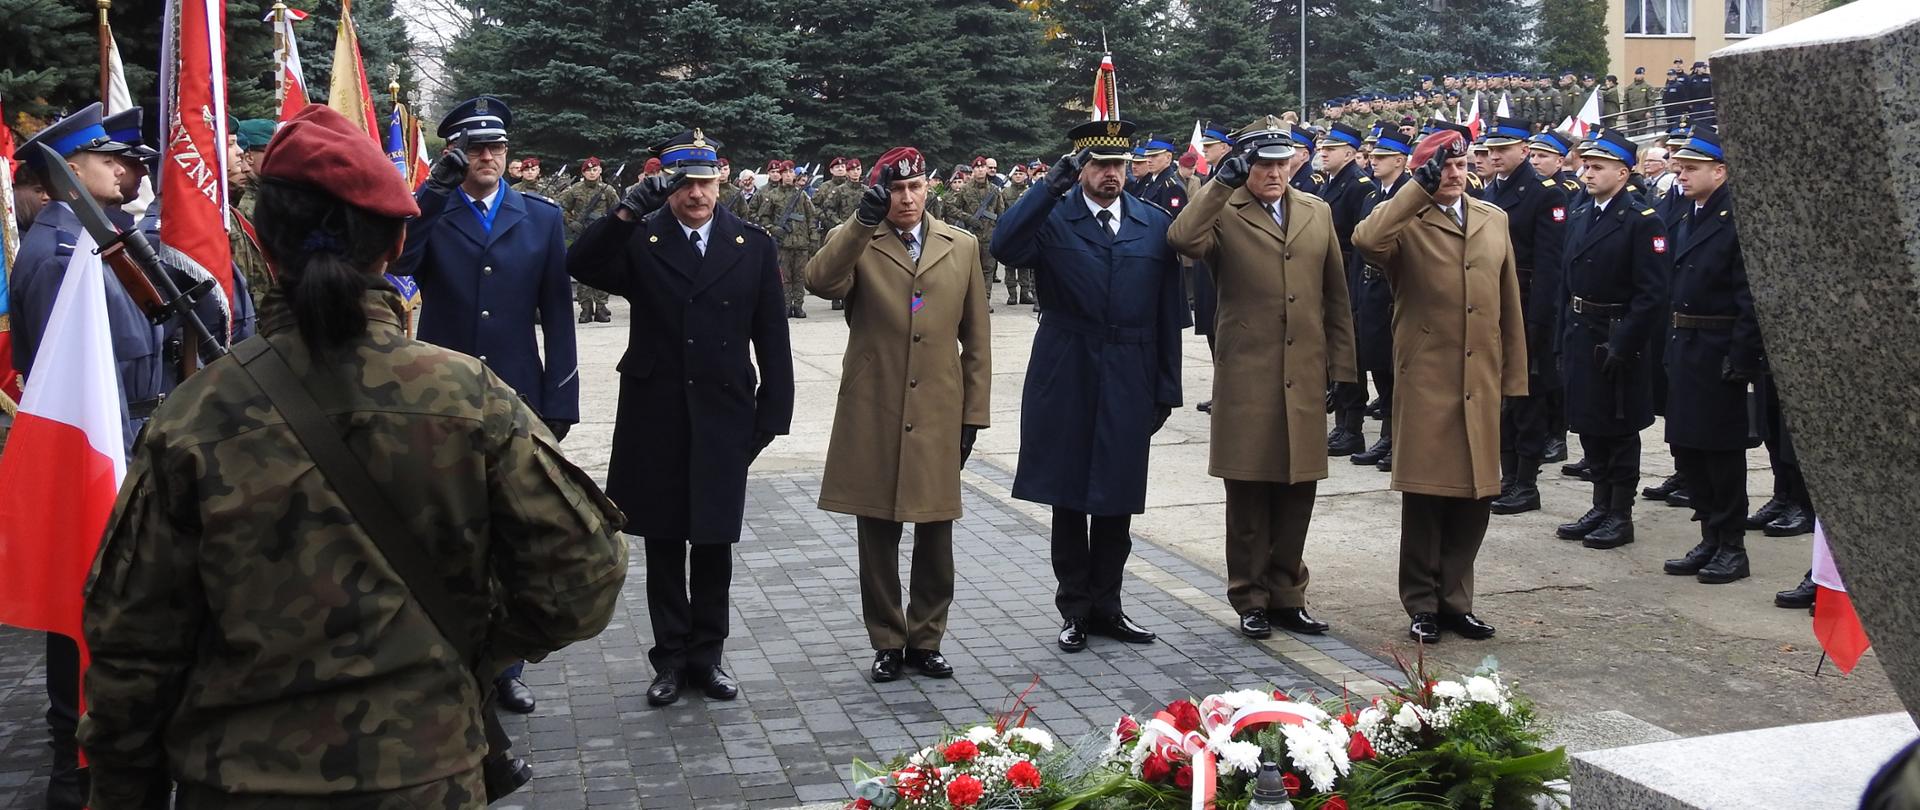 Na zdjęciu są przedstawiciele służb mundurowych składający wiązanek przed Grobem Nieznanego Żołnierza.